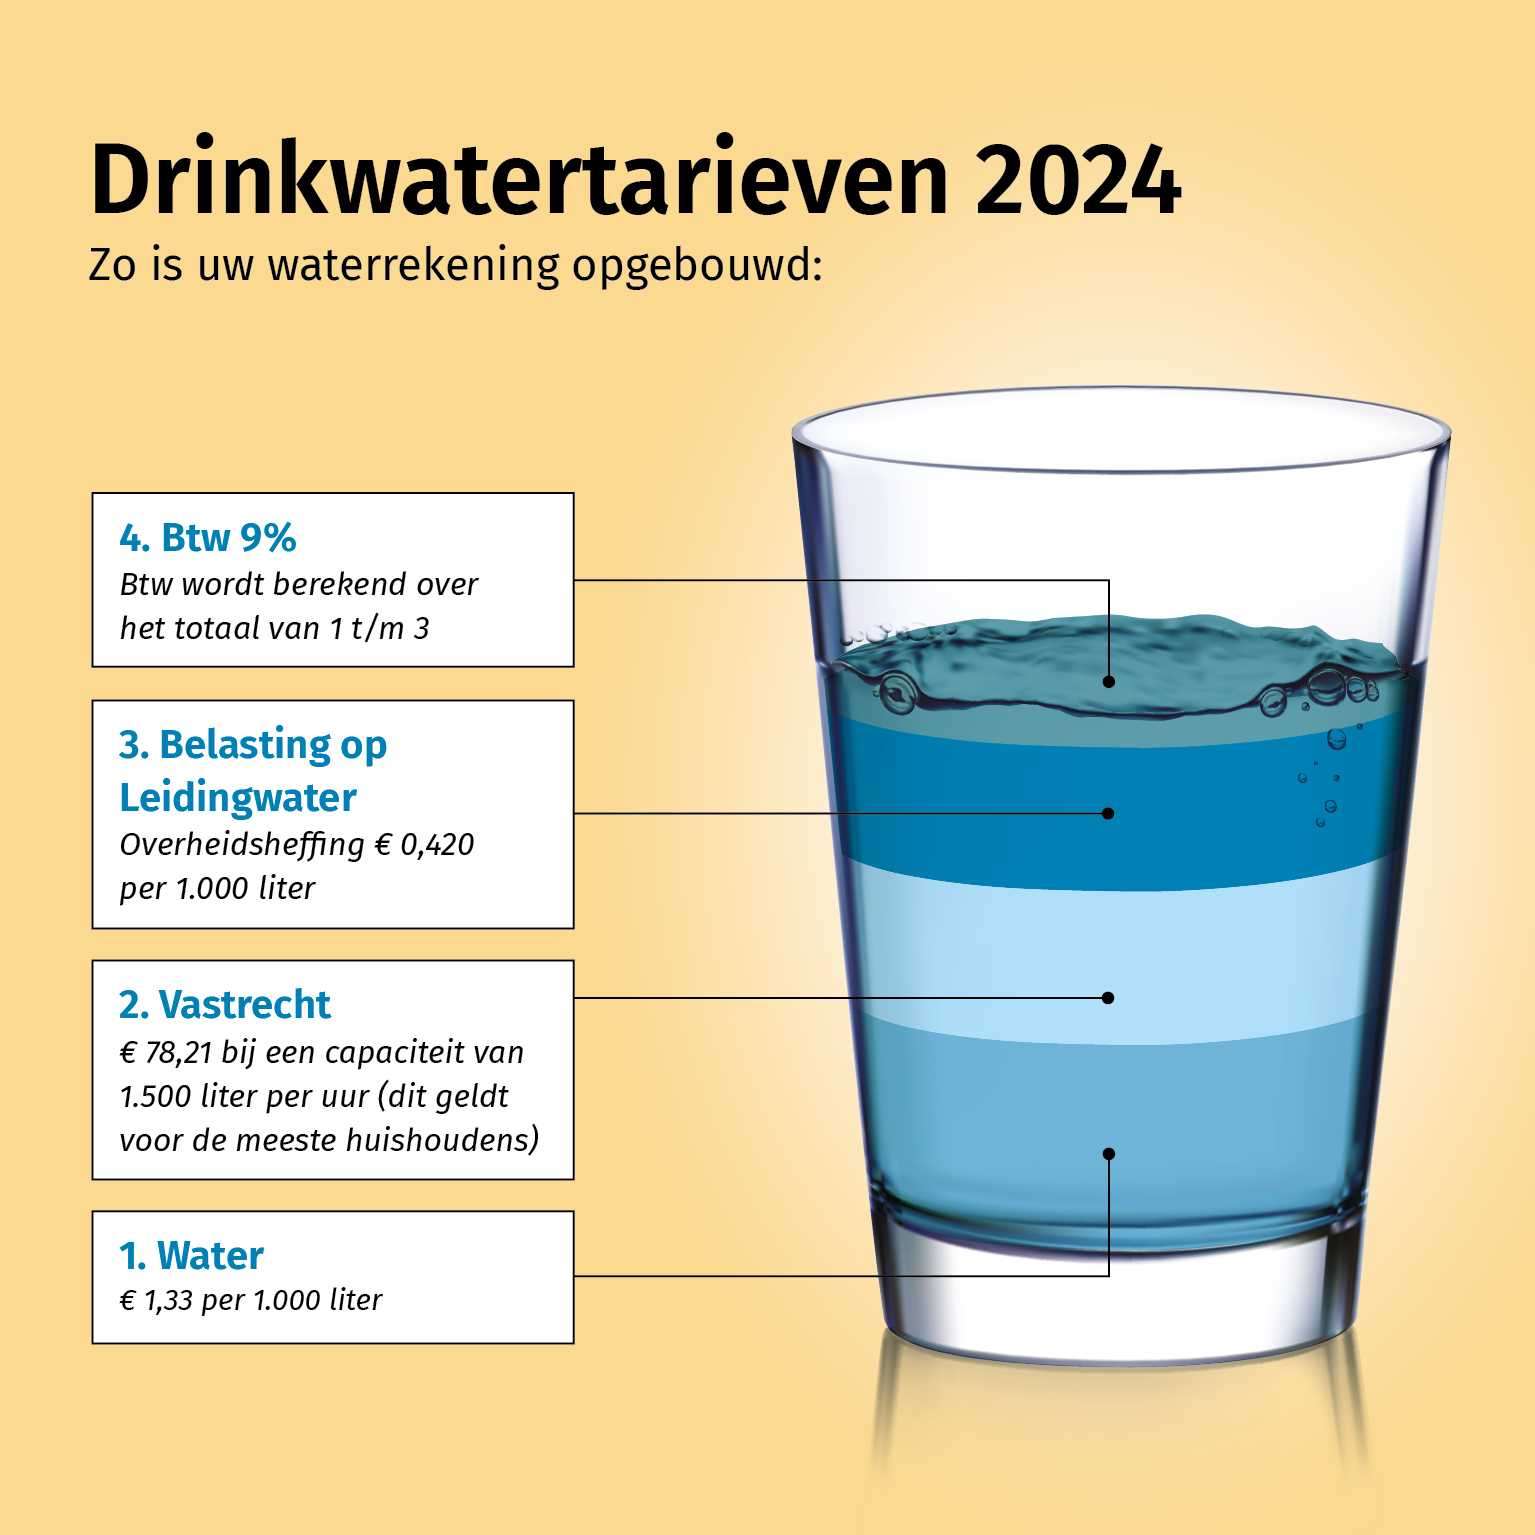 Waterglas met uitleg over tarieven 2024